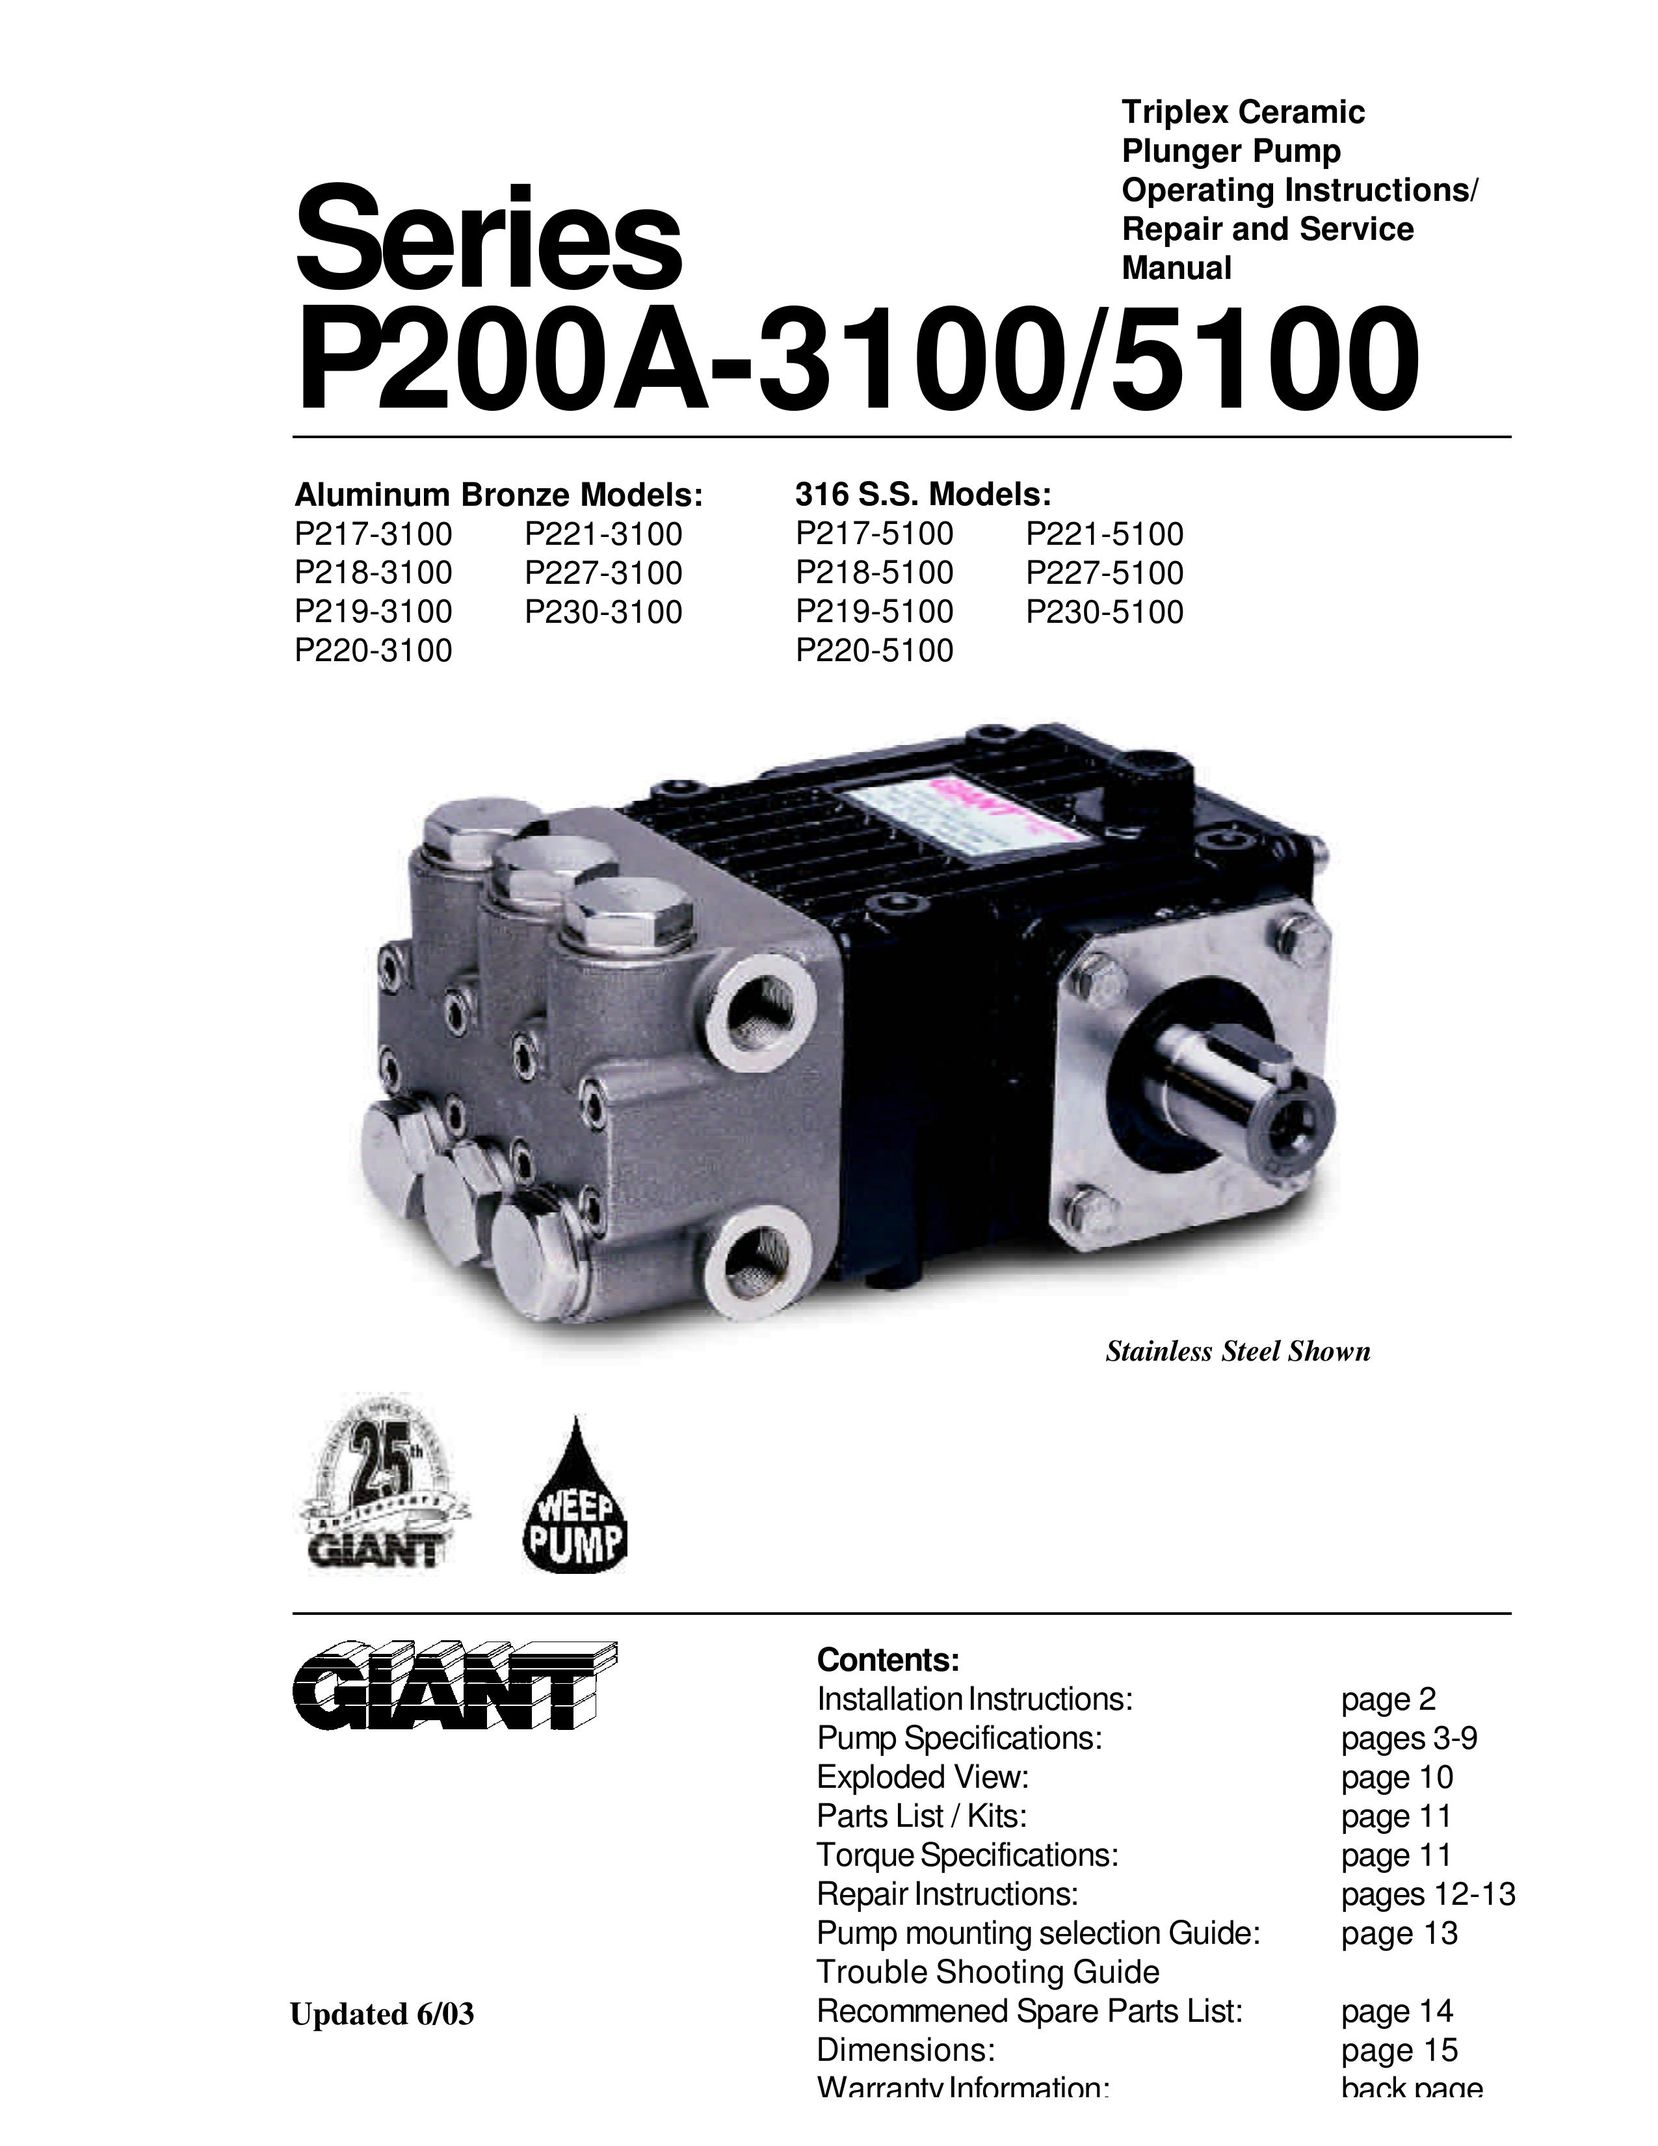 Giant P217-5100 Water Pump User Manual